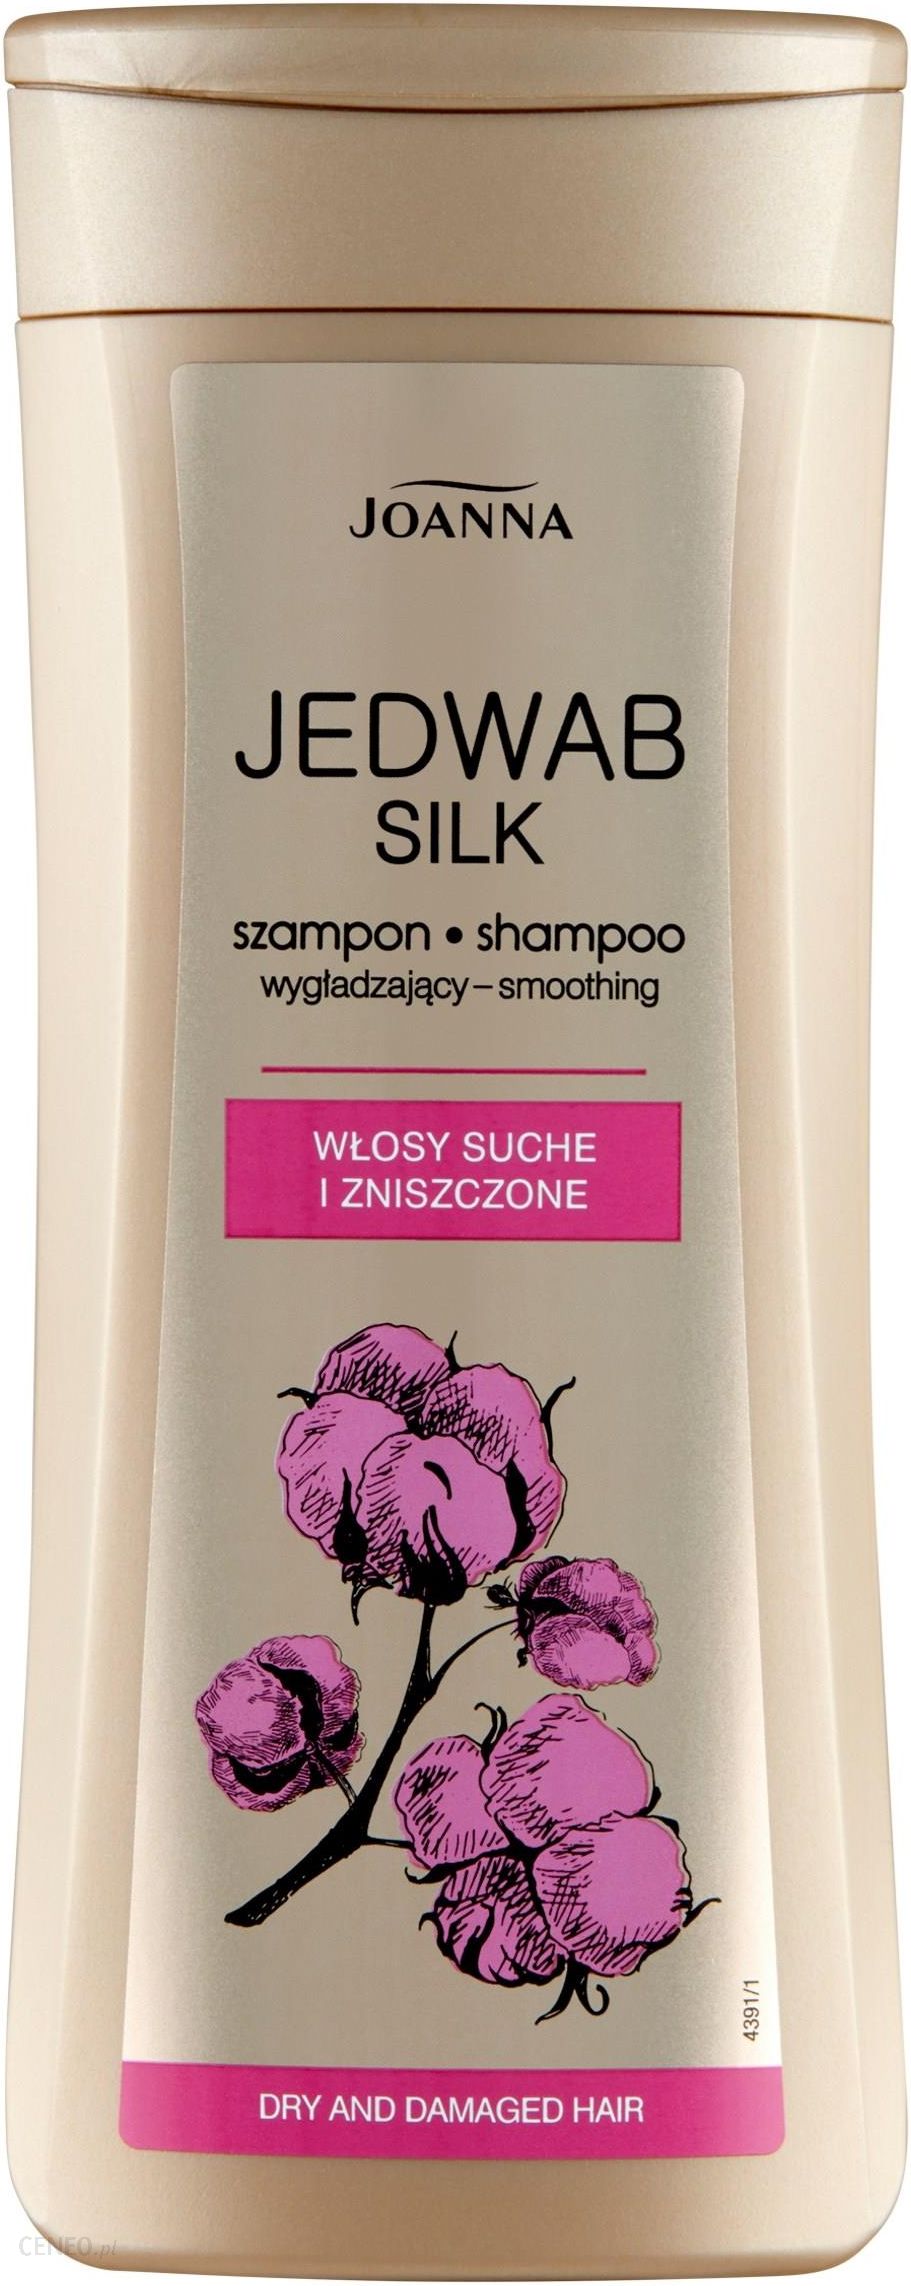 joanna jedwab silk szampon